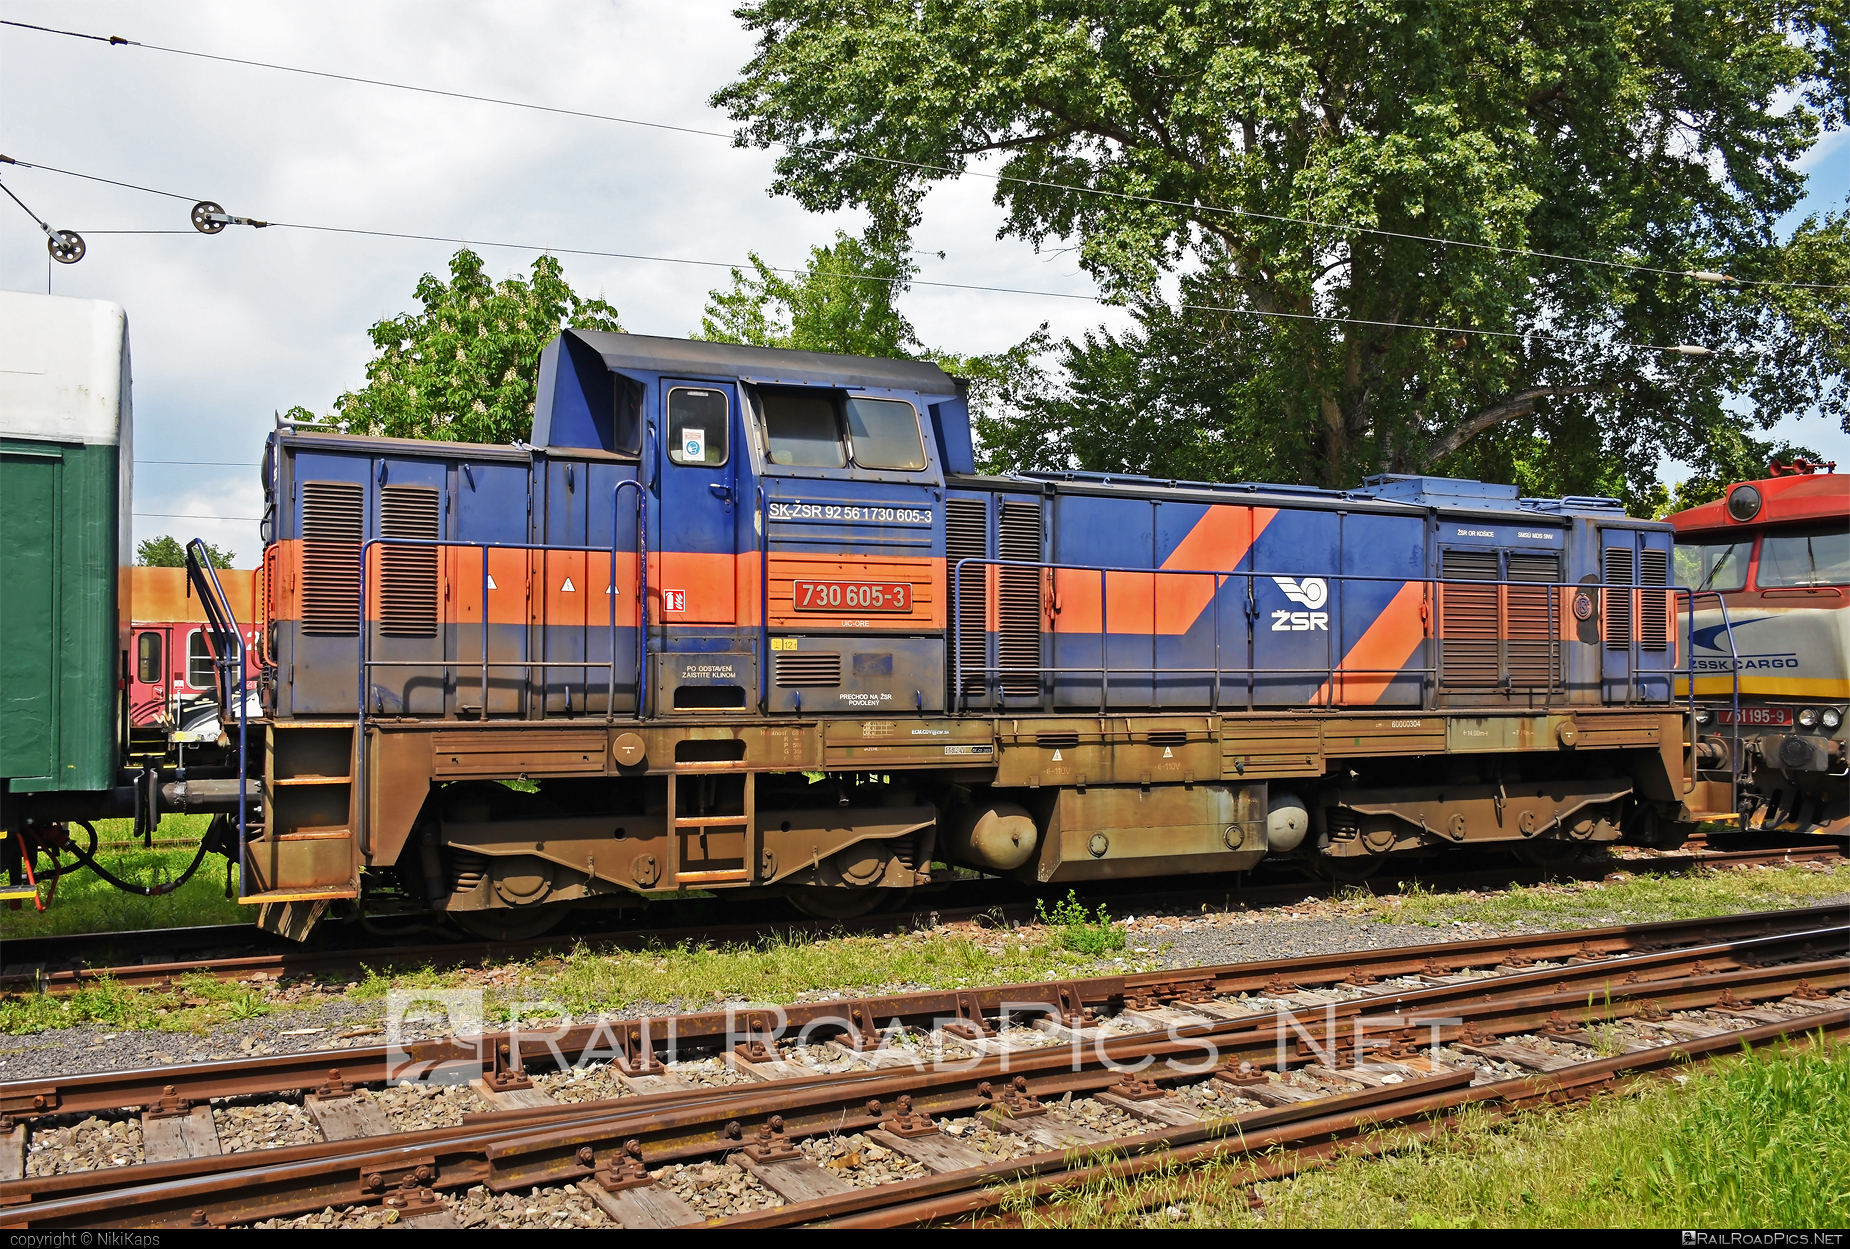 ČKD T 457 (730) - 730 605-3 operated by Železnice Slovenskej Republiky #ckd #ckd457 #ckd730 #ckdt457 #ponorka #zelezniceslovenskejrepubliky #zsr